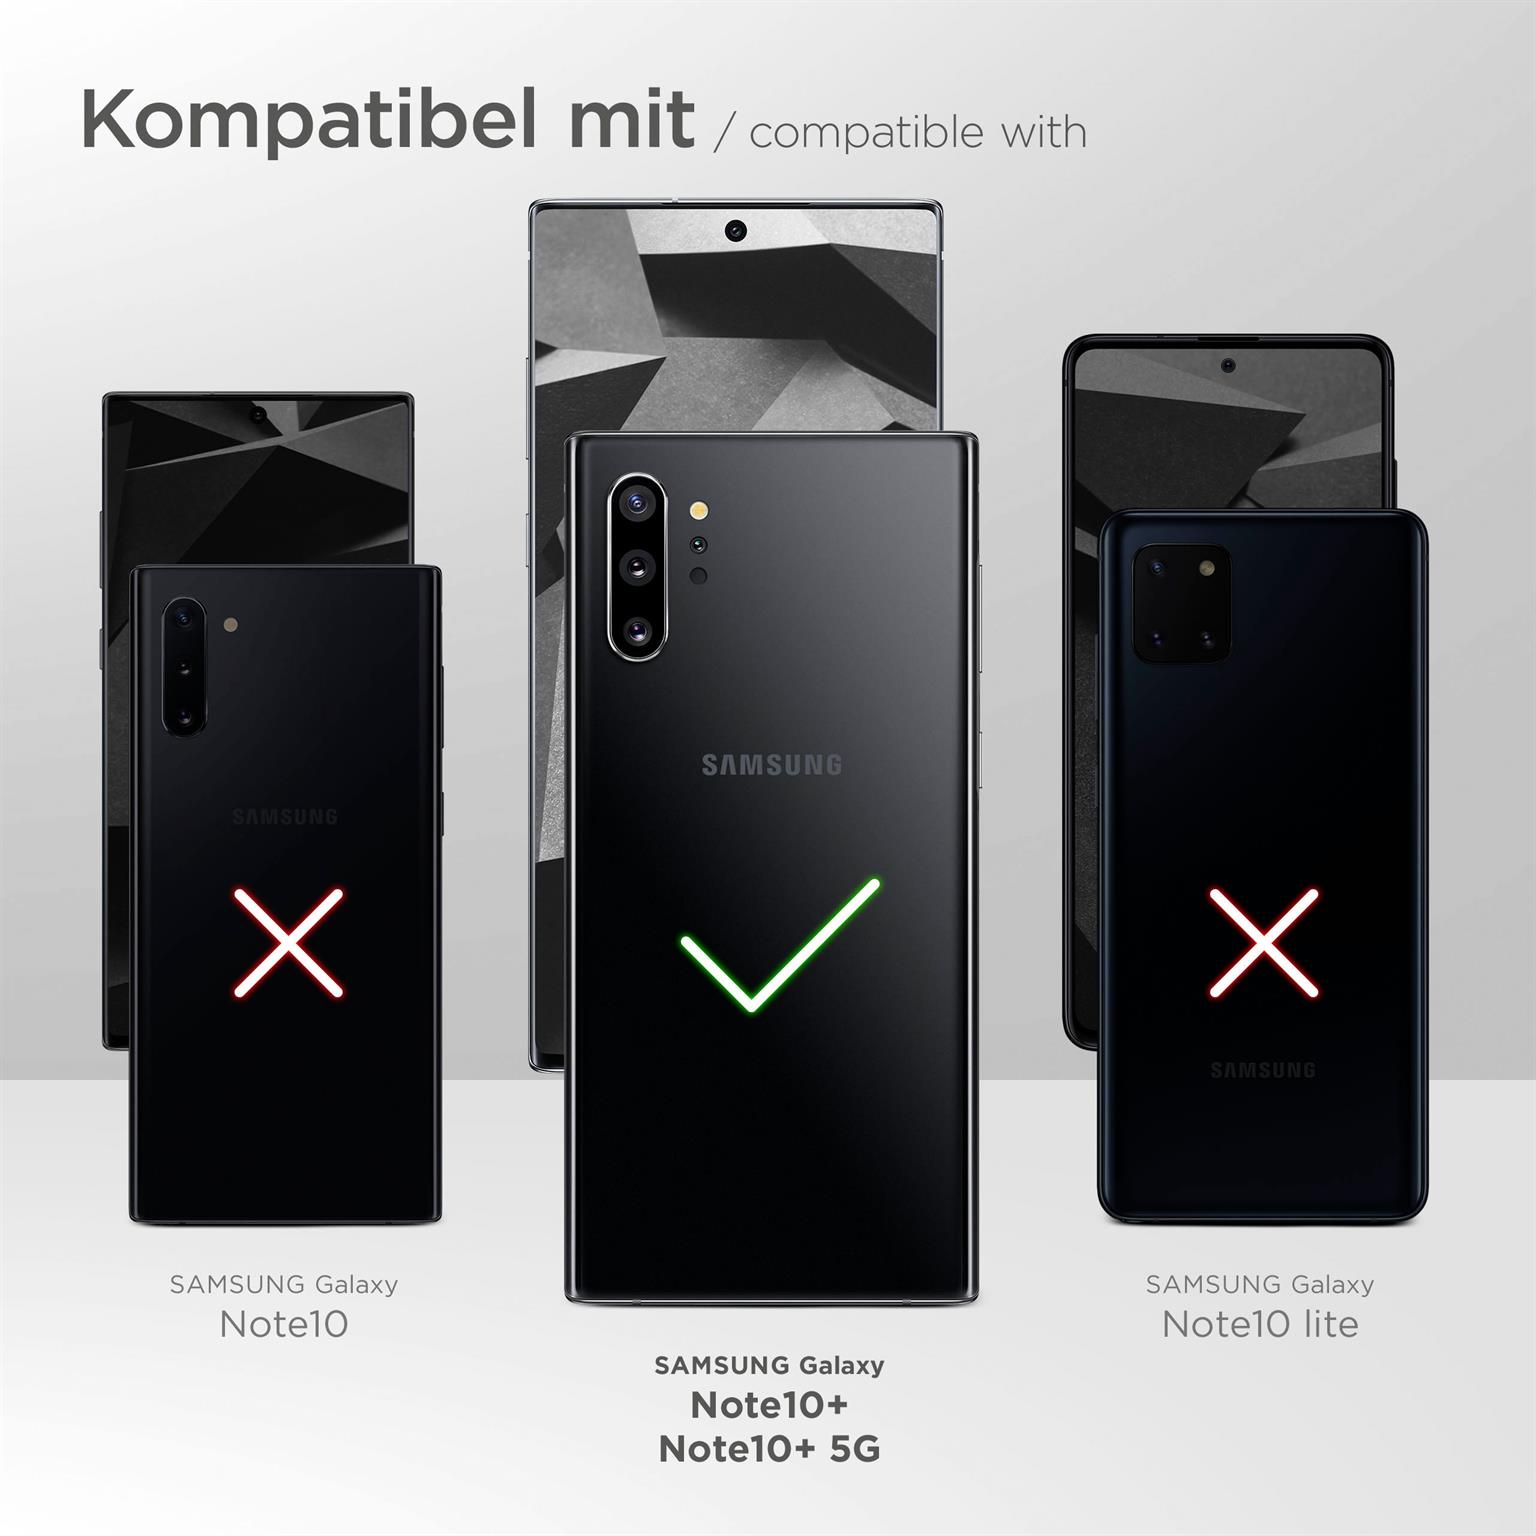 moex Alpha Case für Samsung Galaxy Note 10 Plus – Extrem dünne, minimalistische Hülle in seidenmatt